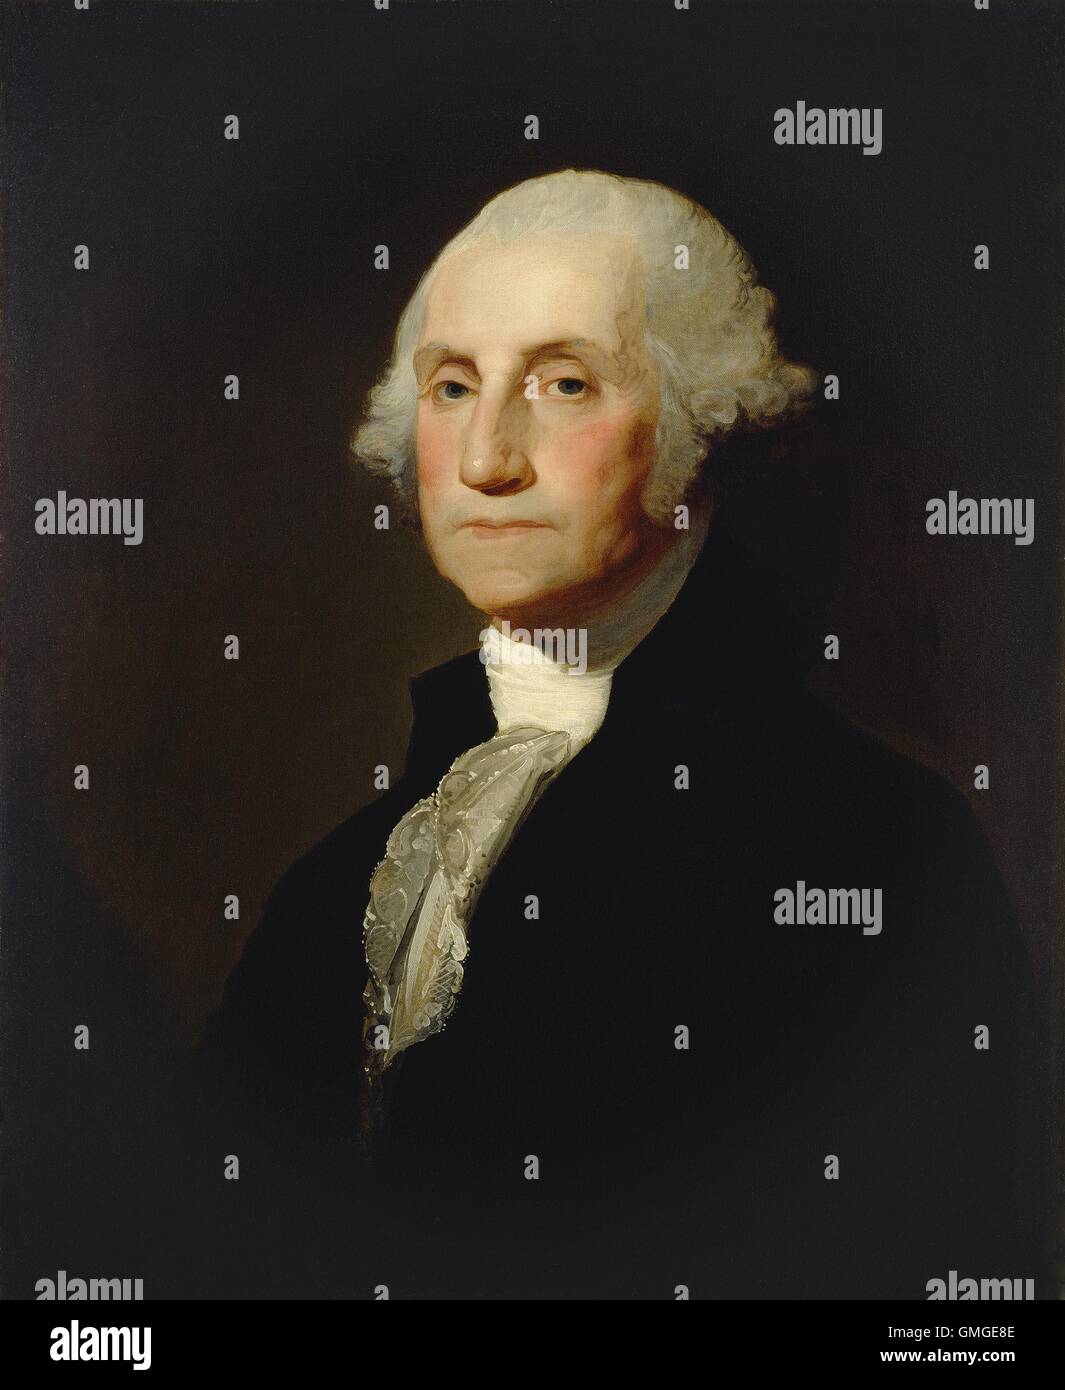 George Washington, von Gilbert Stuart, c. 1803-05, amerikanische Malerei, Öl auf Leinwand. Im Jahre 1796 saß Washington Stuart, erstellt das berühmte, aber nie fertig "Athenaeum" Porträt. Aus dieser Arbeit verkauft er bis zu 70 der seine Reproduktionen, wie diese (BSLOC 2016 5 62) Stockfoto